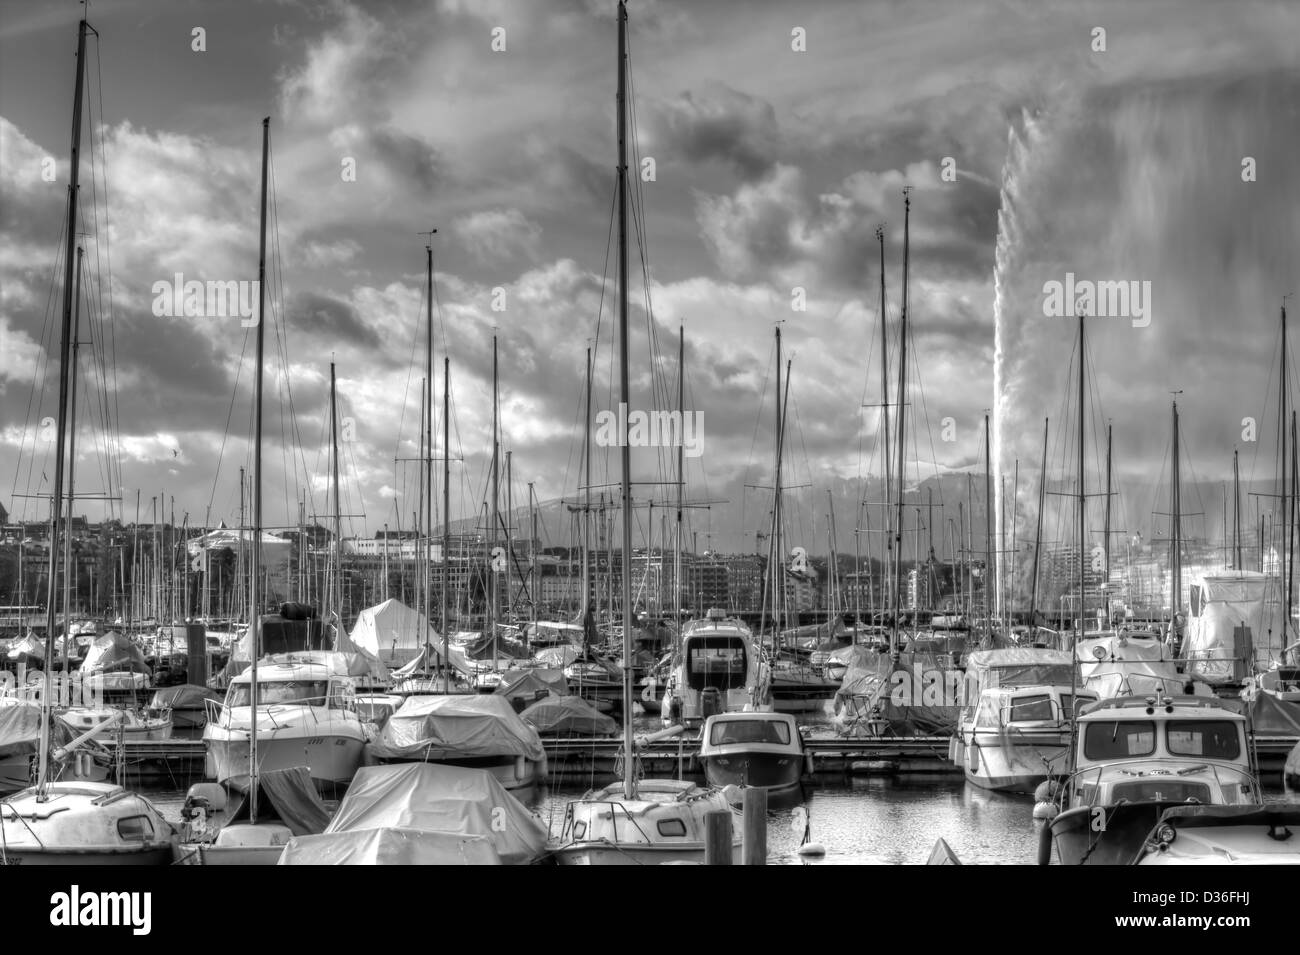 Yachts à côté de centre-ville de Genève avec fontaine, montagnes et ciel nuageux sur l'arrière-plan à jour ensoleillé. Noir et blanc. Banque D'Images